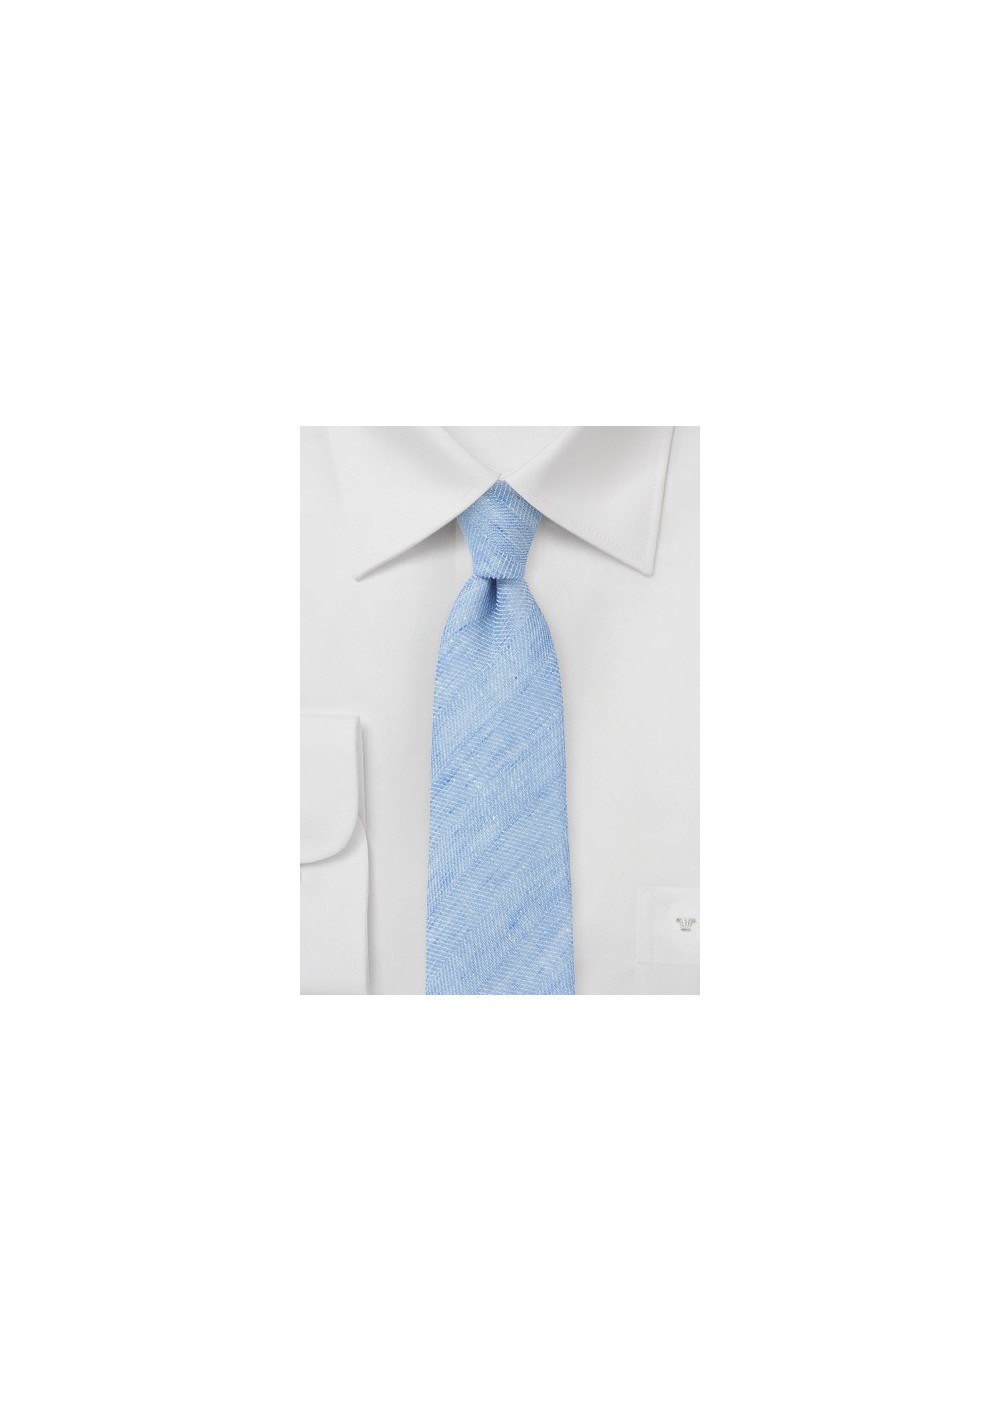 Coastal Blue Skinny Tie in Linen